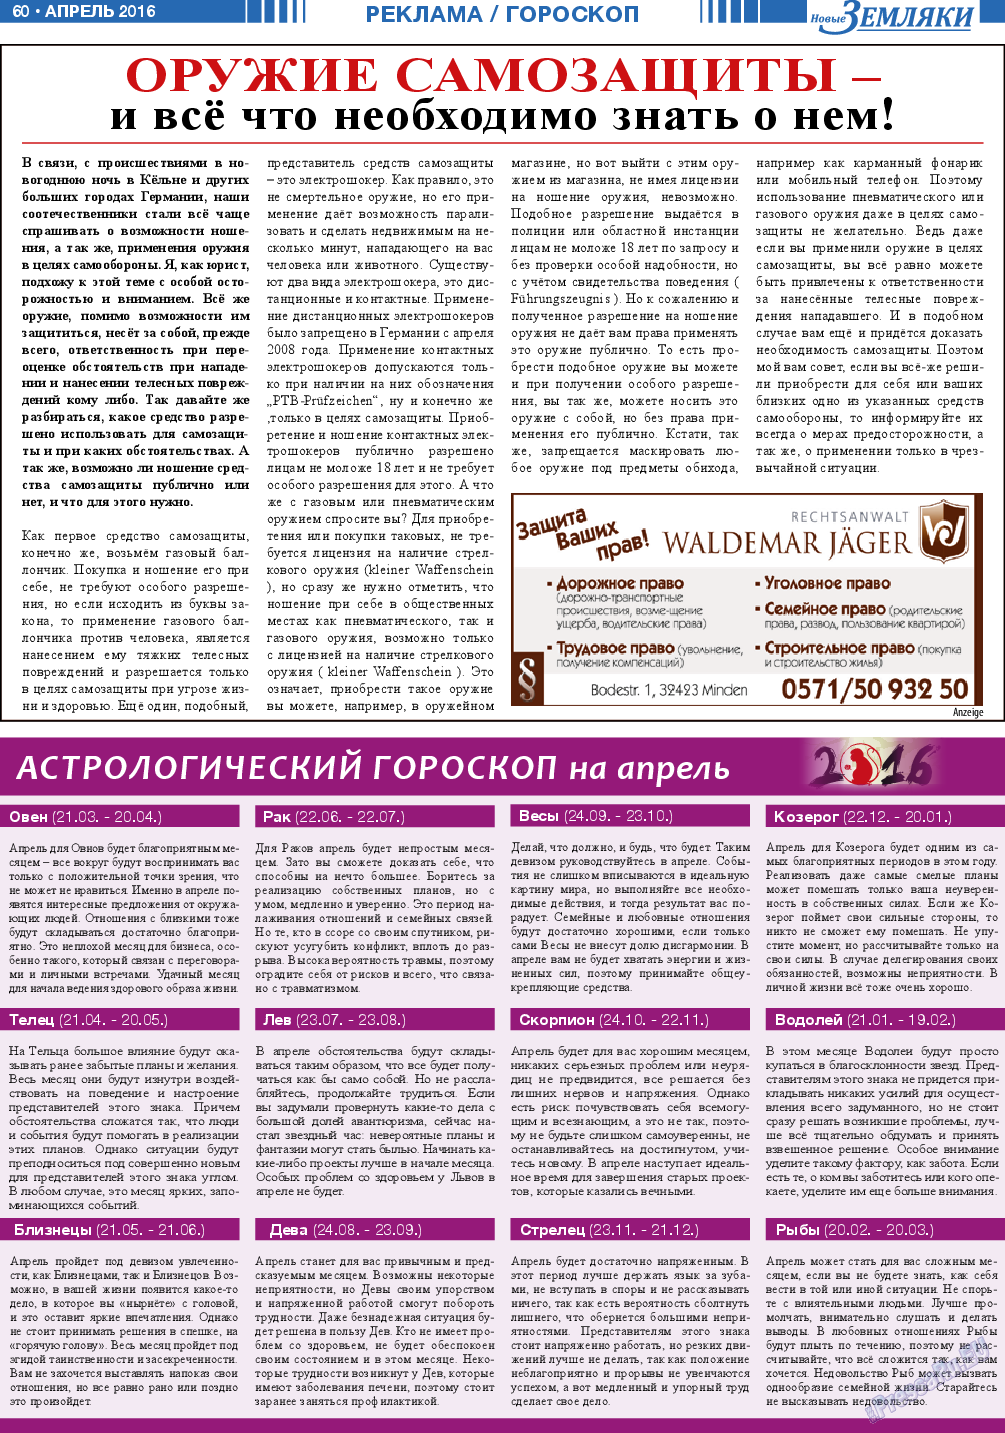 Новые Земляки, газета. 2016 №4 стр.60